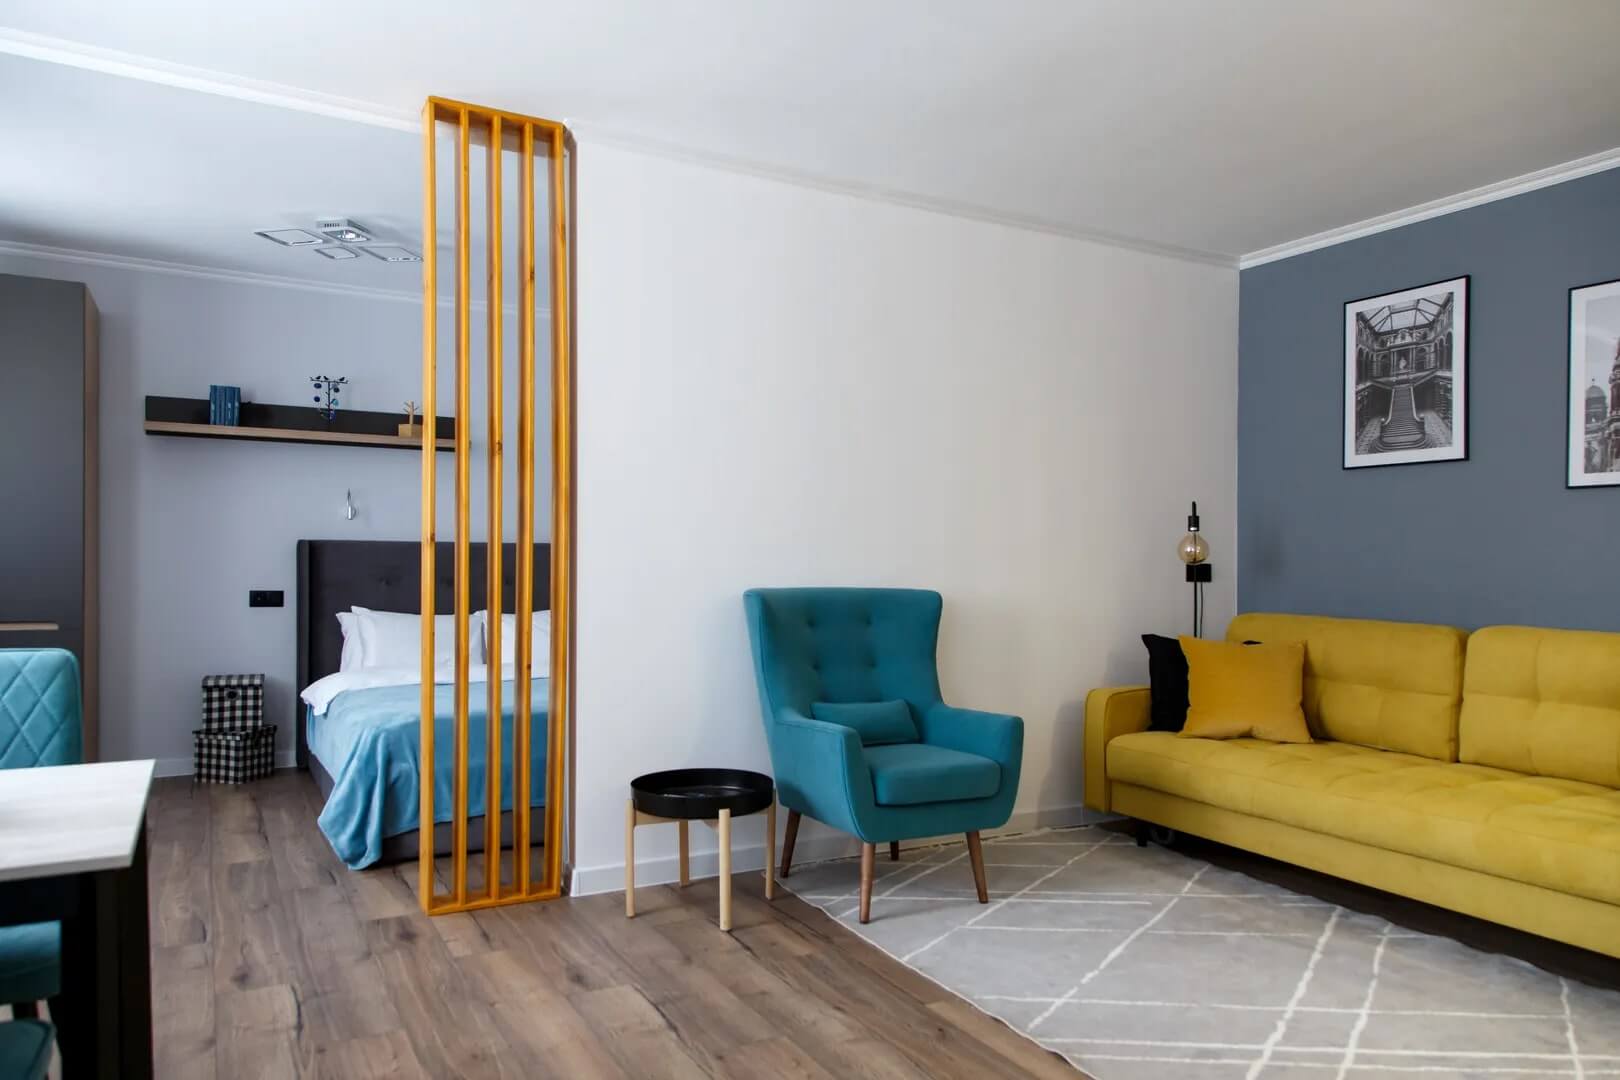 Комната: желтый диван, бирюзовое кресло, за деревянной перегородкой - кровать с бирюзовым покрывалом.